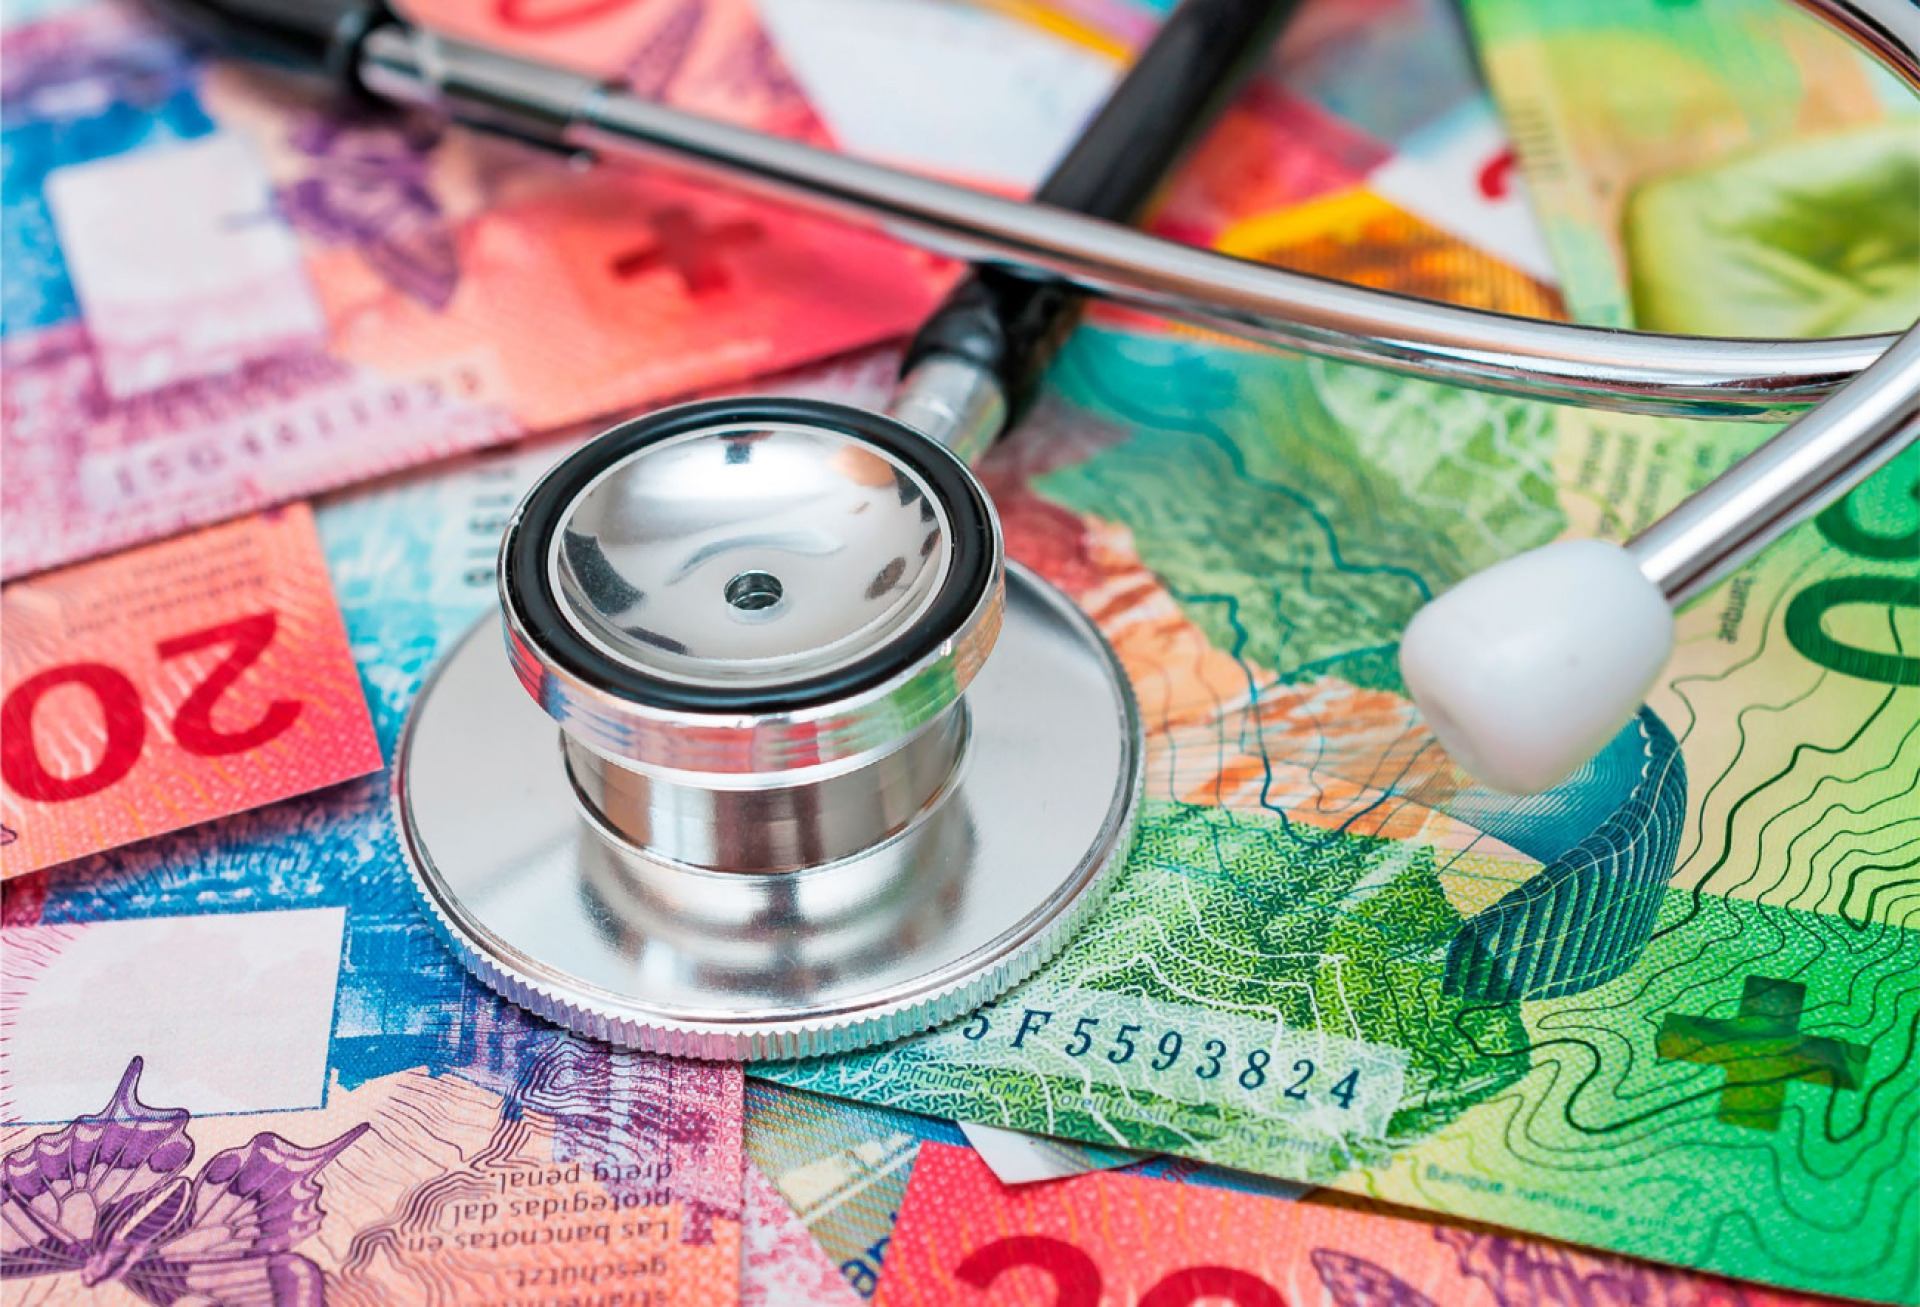 Das Schweizer Gesundheitssystem krankt an stetig steigenden Kosten, die vor allem Geringverdiener-Haushalte belasten. BILD: STOCKFOTO-MG / STOCK.ADOBE.COM